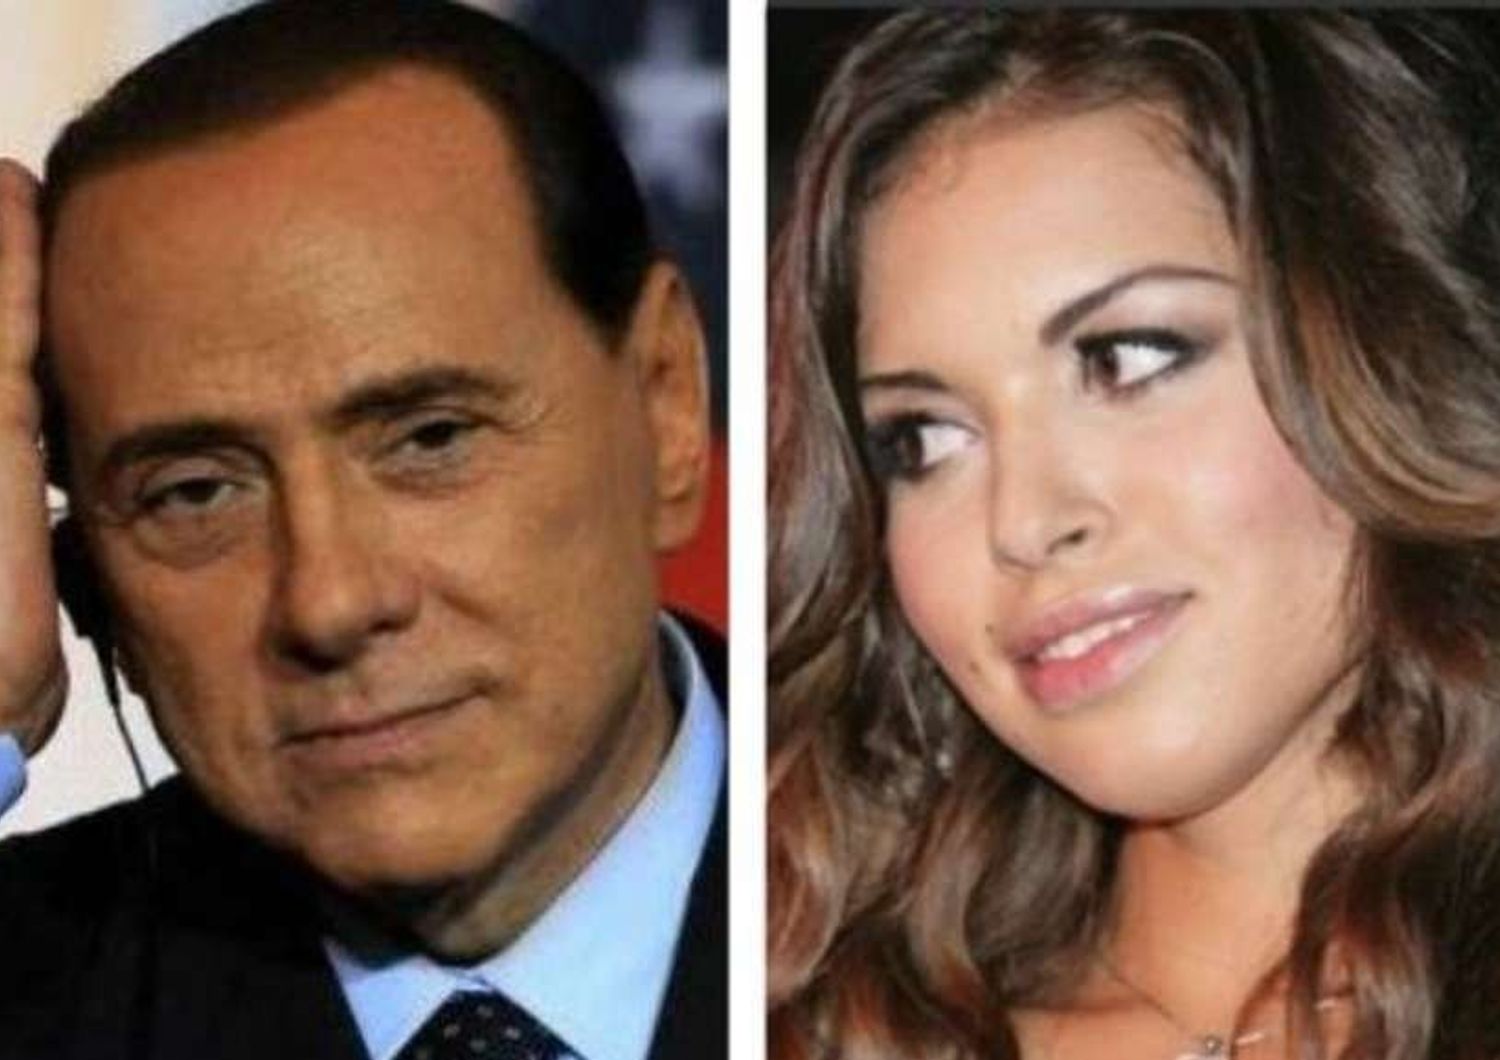 Ruby, pg Milano "confermate 7 anni a Berlusconi". A Bari chiesto rinvio a giudizio per caso escort